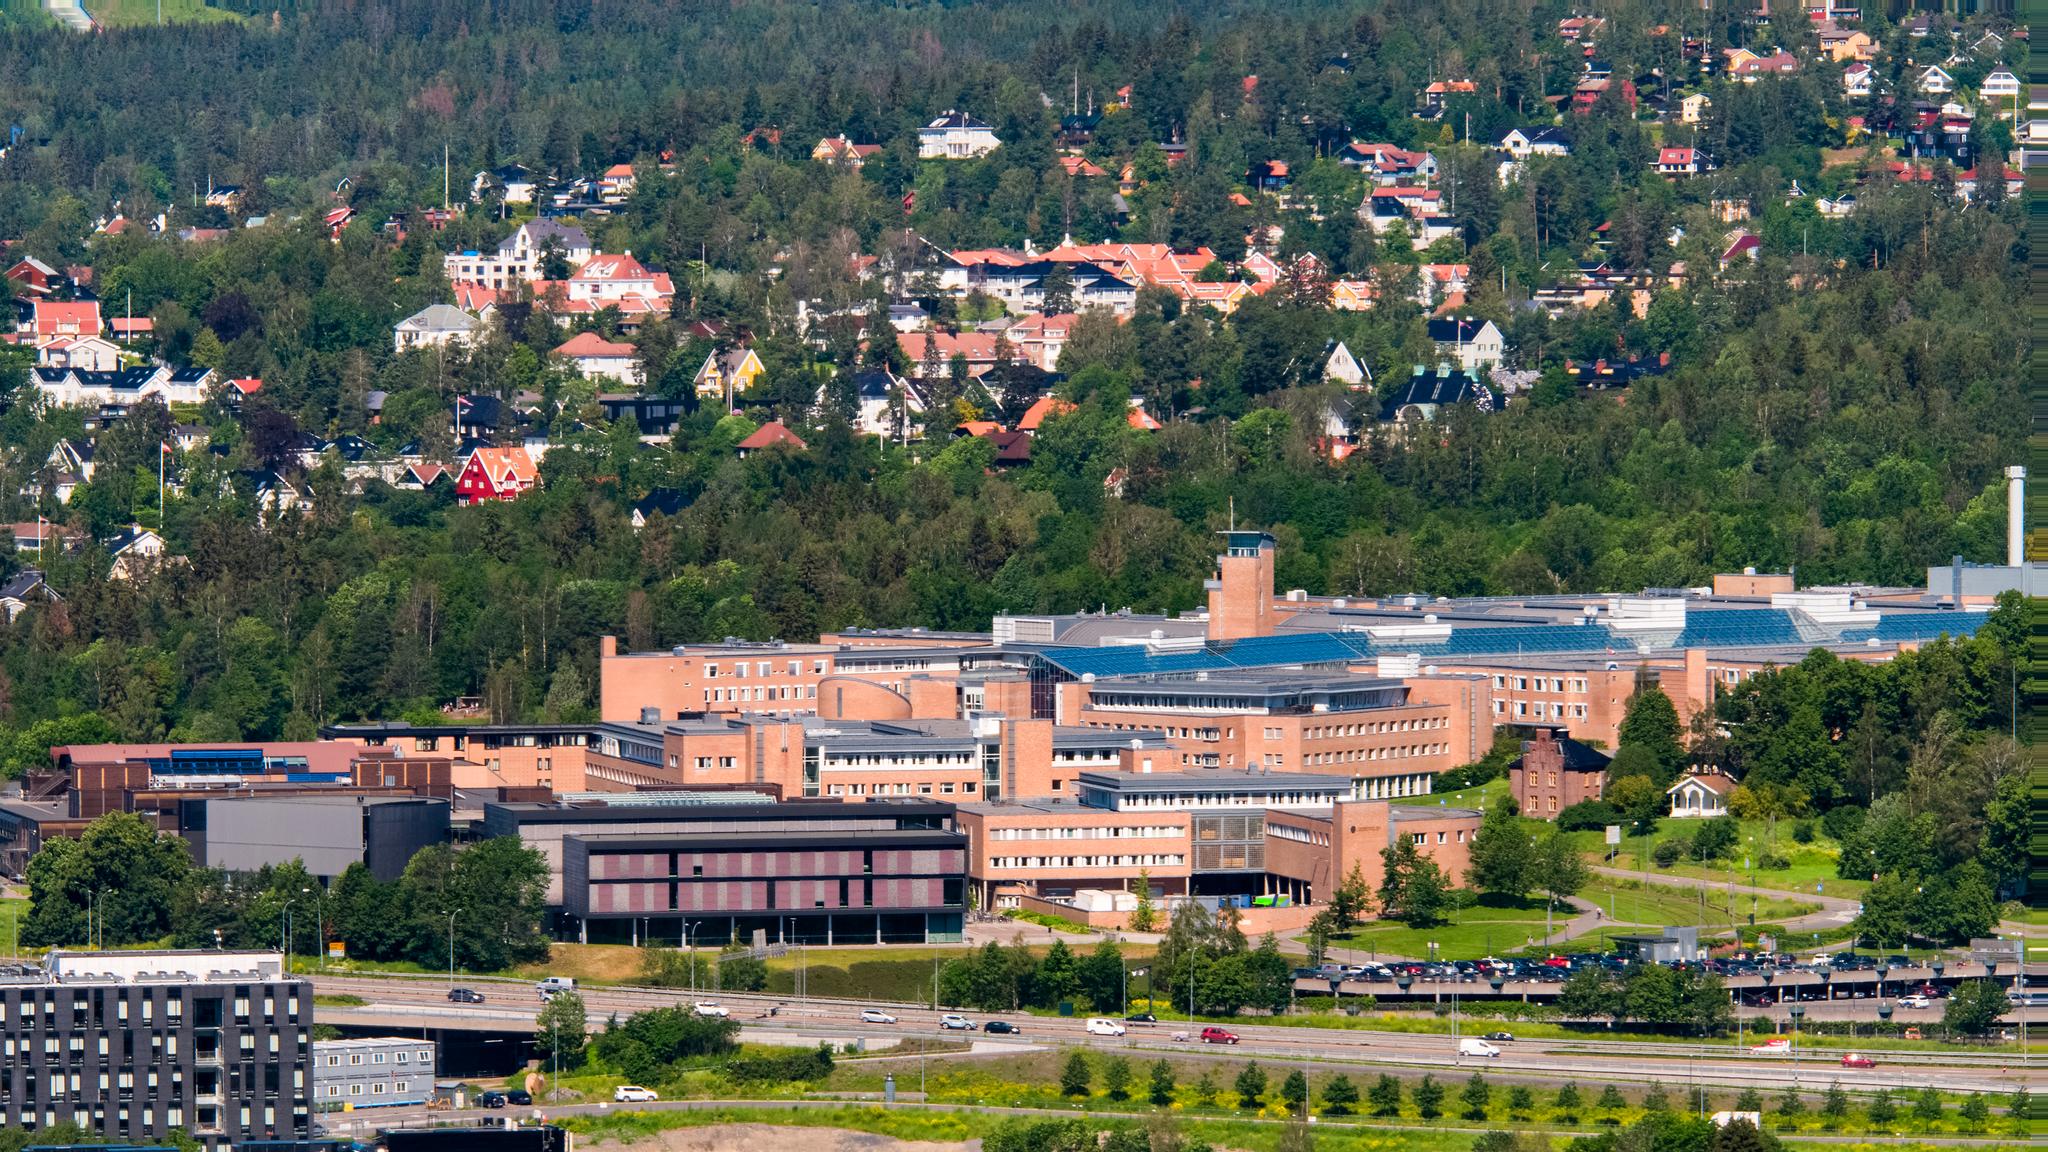 Mens Rune Slagstad etterspør ytterligere utredninger, venter byens, regionens og landets pasienter fortsatt på nye og tidsriktige sykehusbygg i Oslo, skriver Morten Meyer.